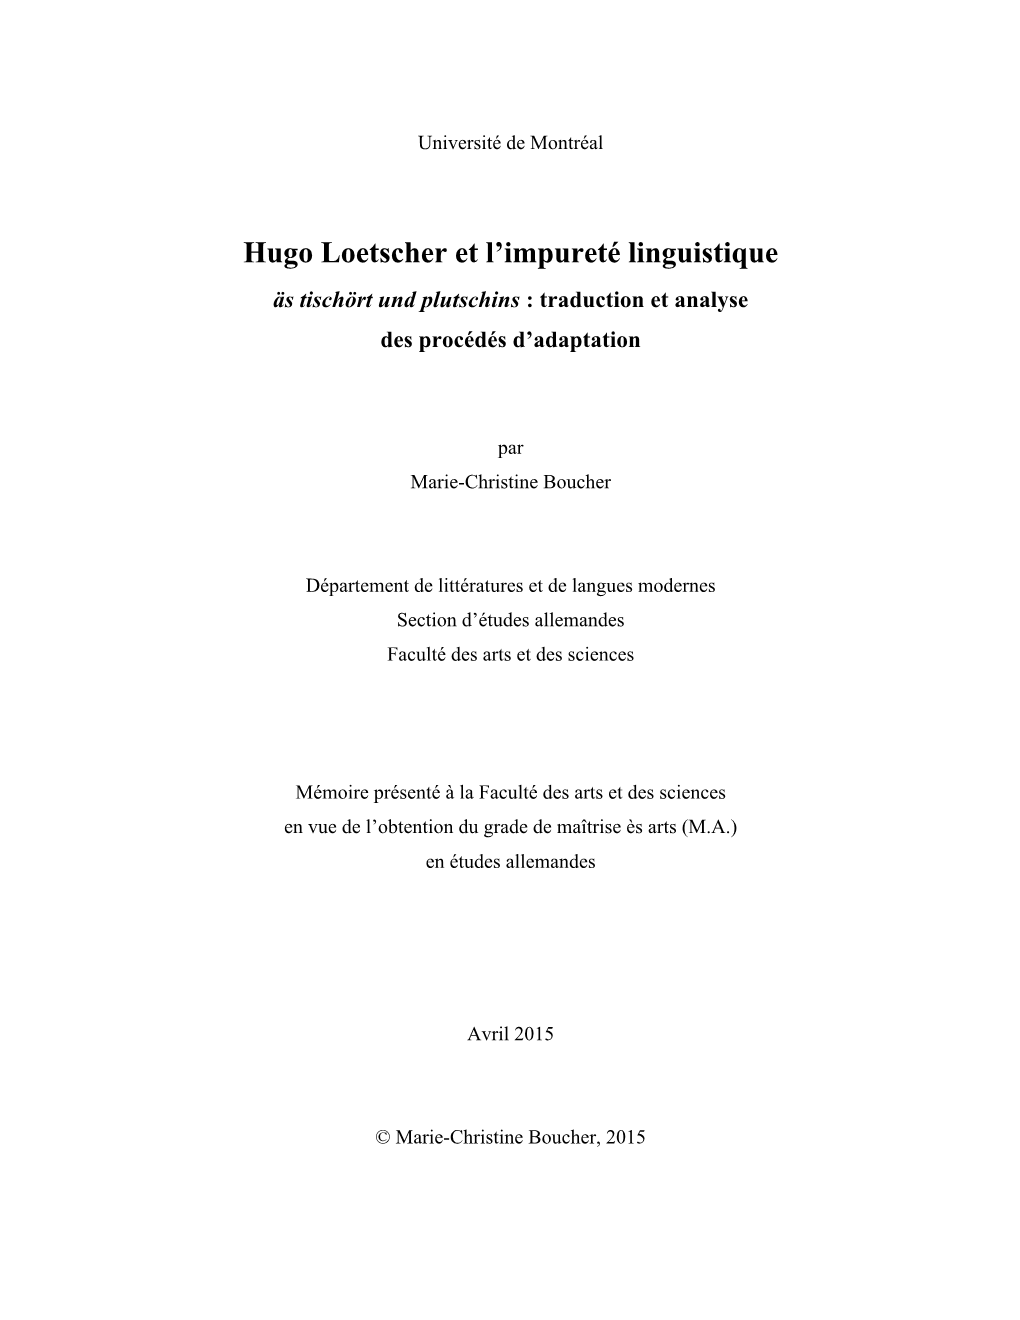 Hugo Loetscher Et L'impureté Linguistique